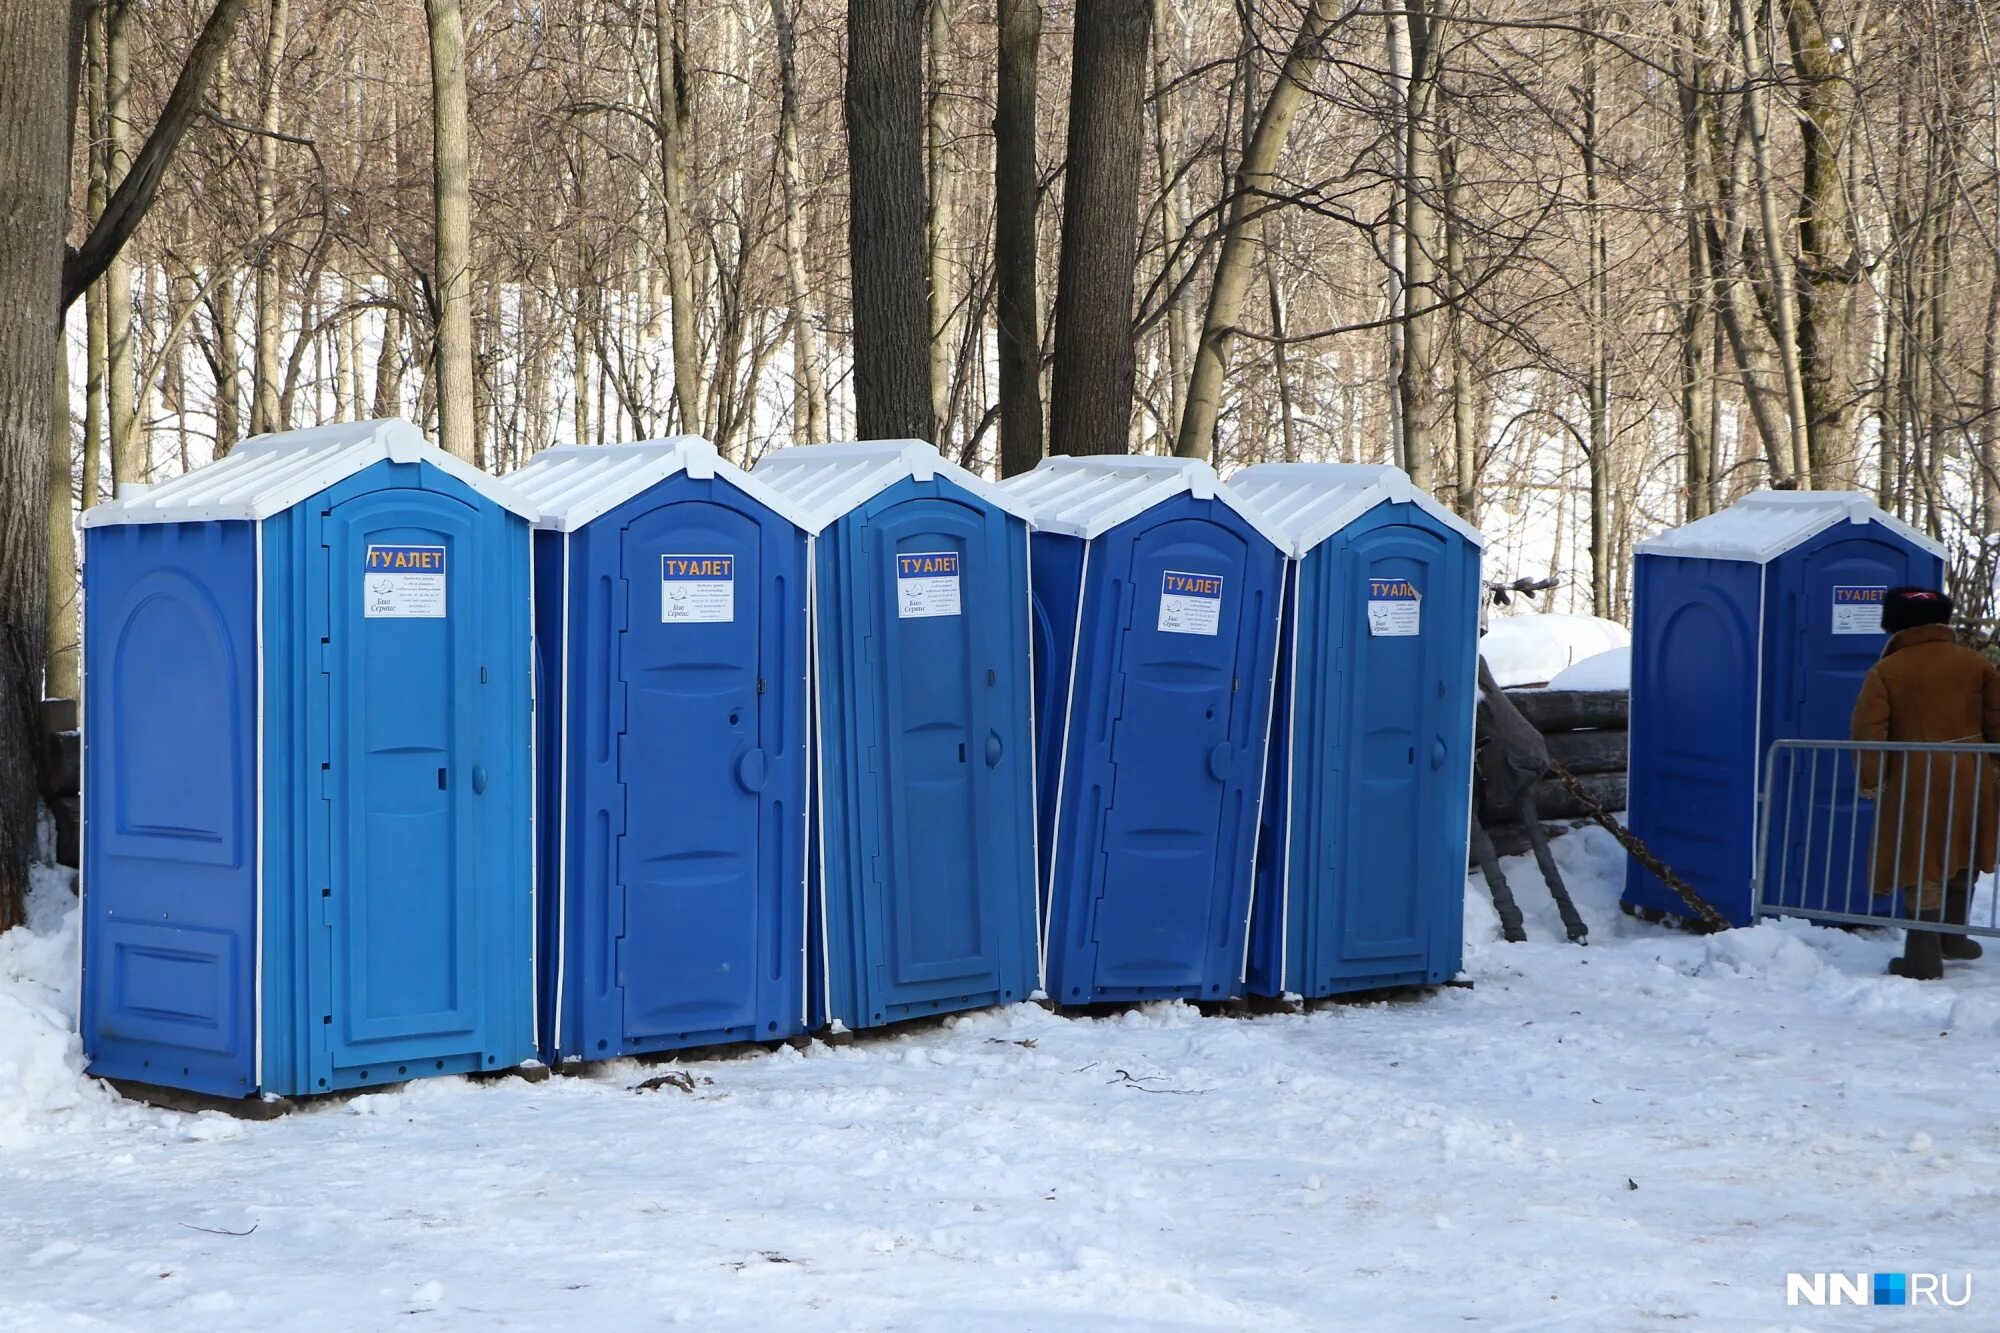 Купить туалет нижний новгород. Уличный туалет. Уличные туалетные кабинки. Мобильный туалет. Уличный туалет в России.